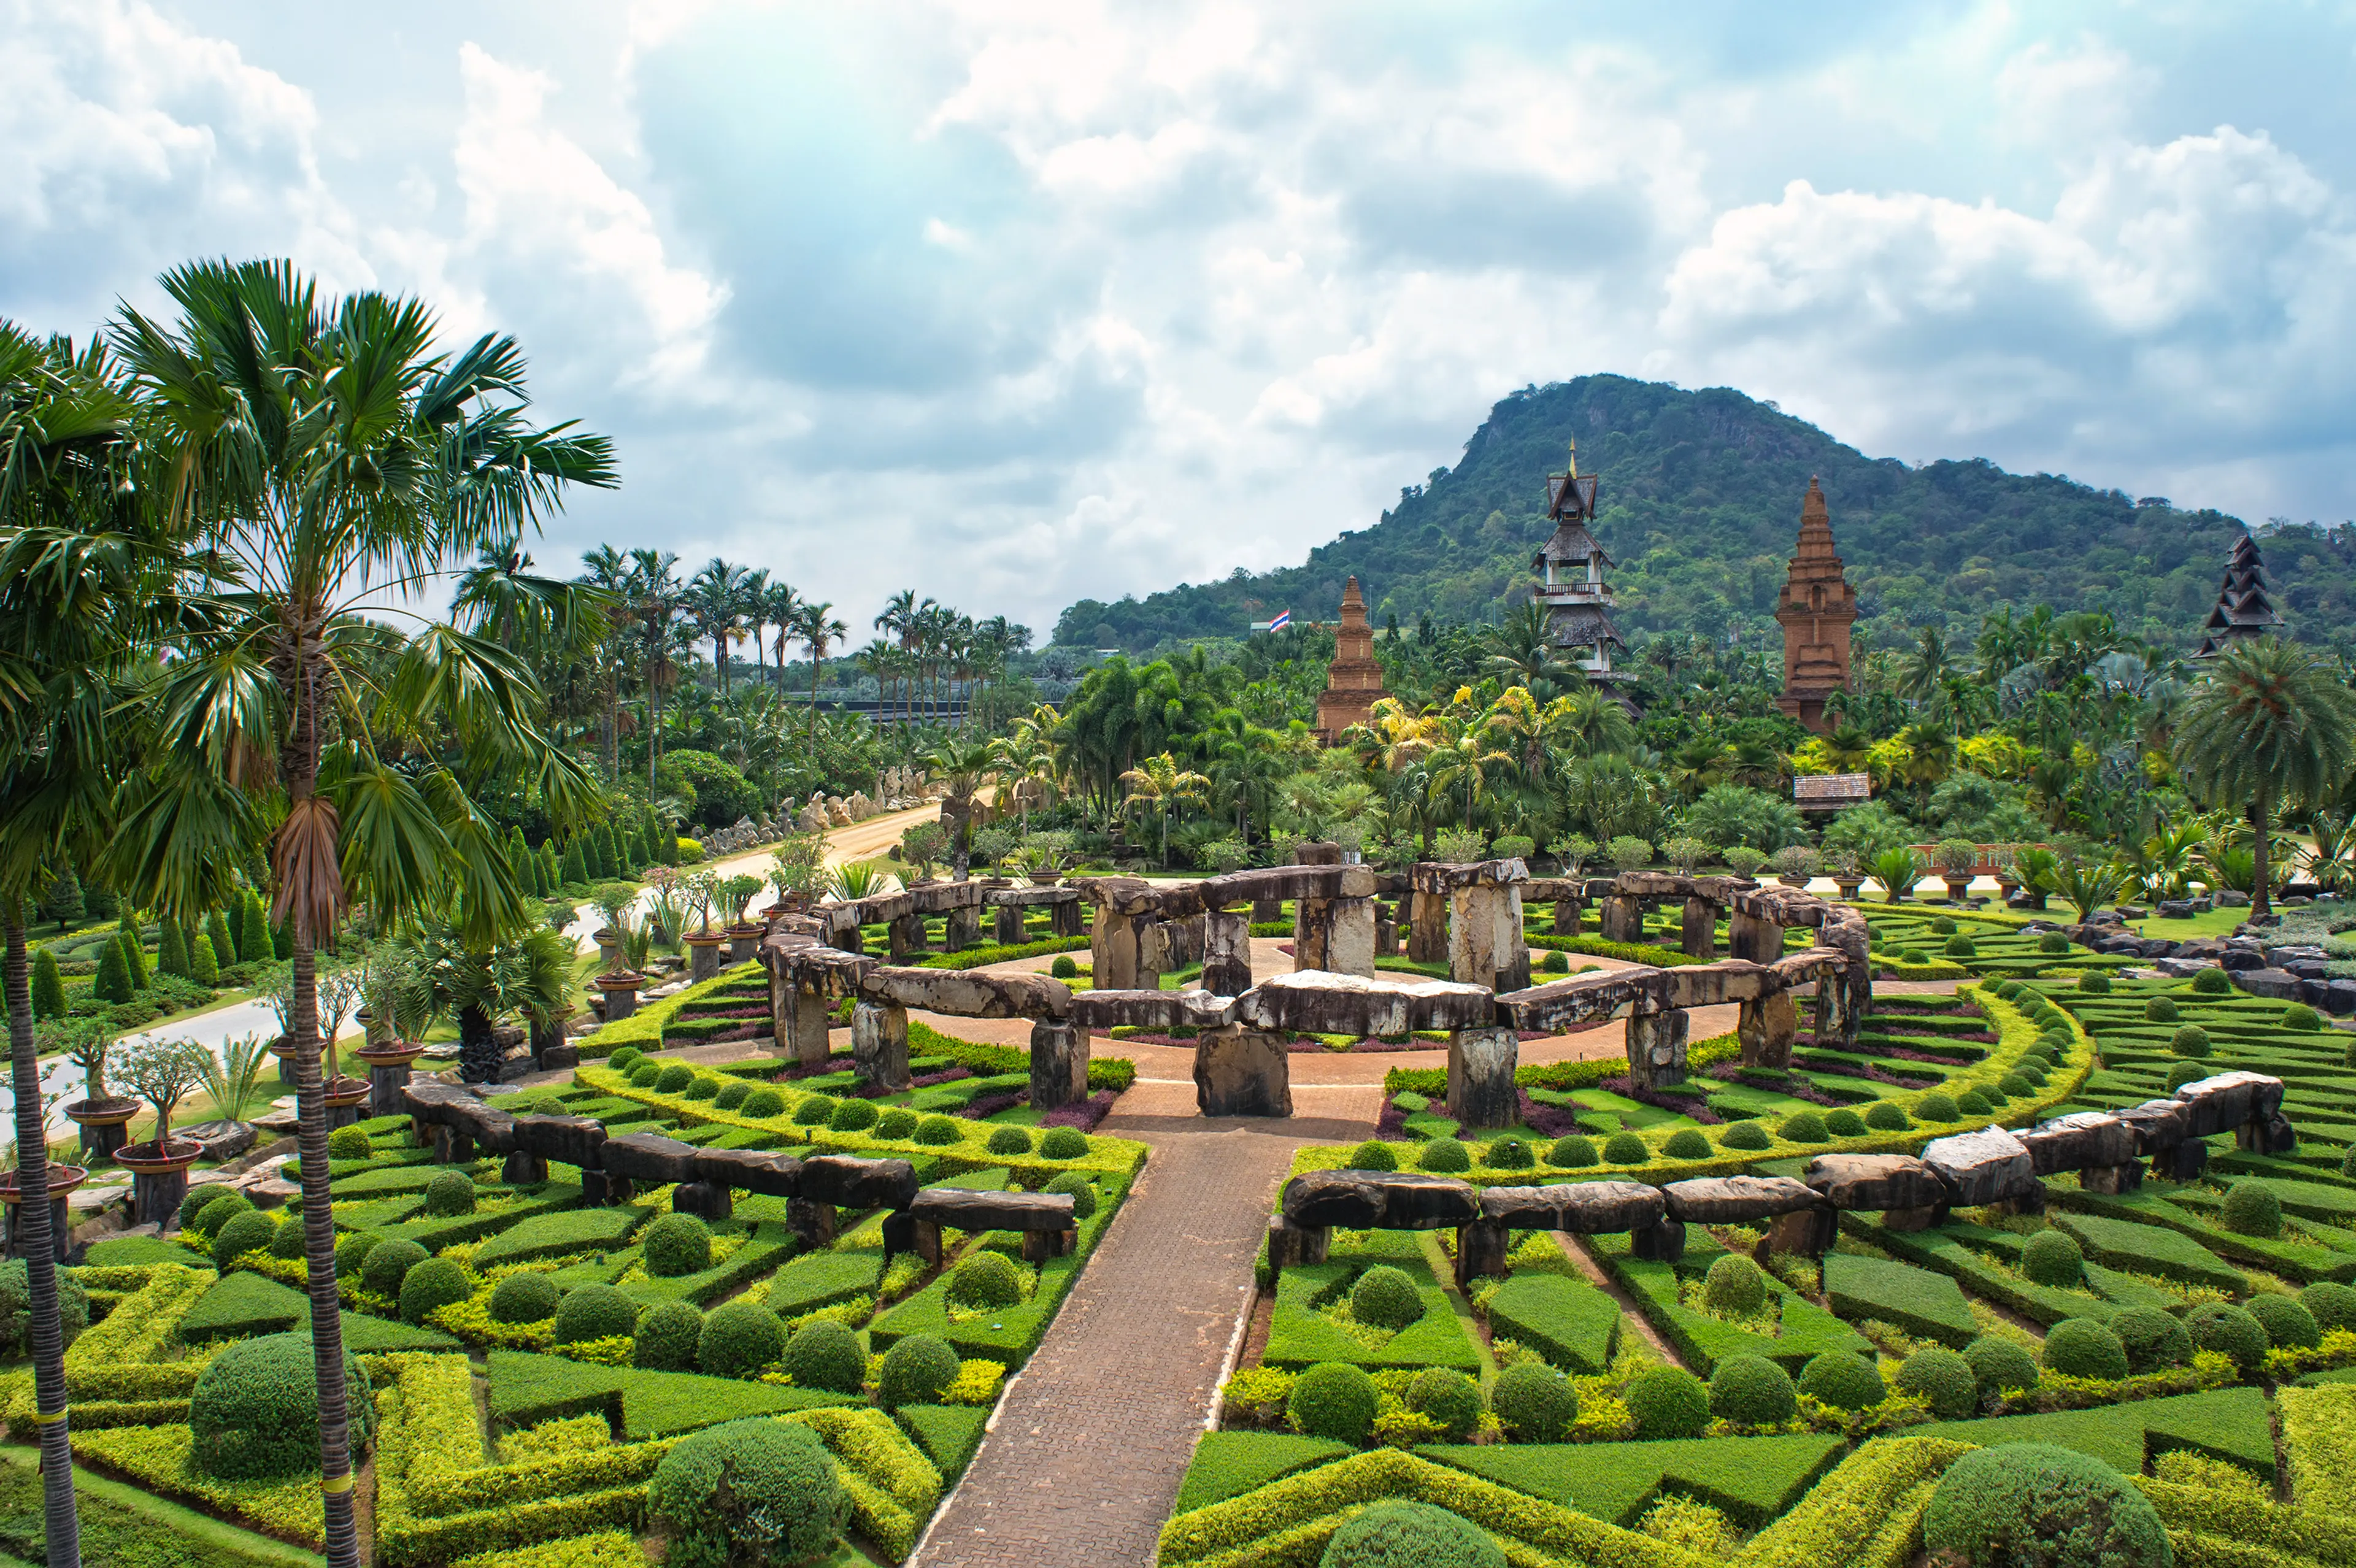 Nong Nooch tropical botanical garden